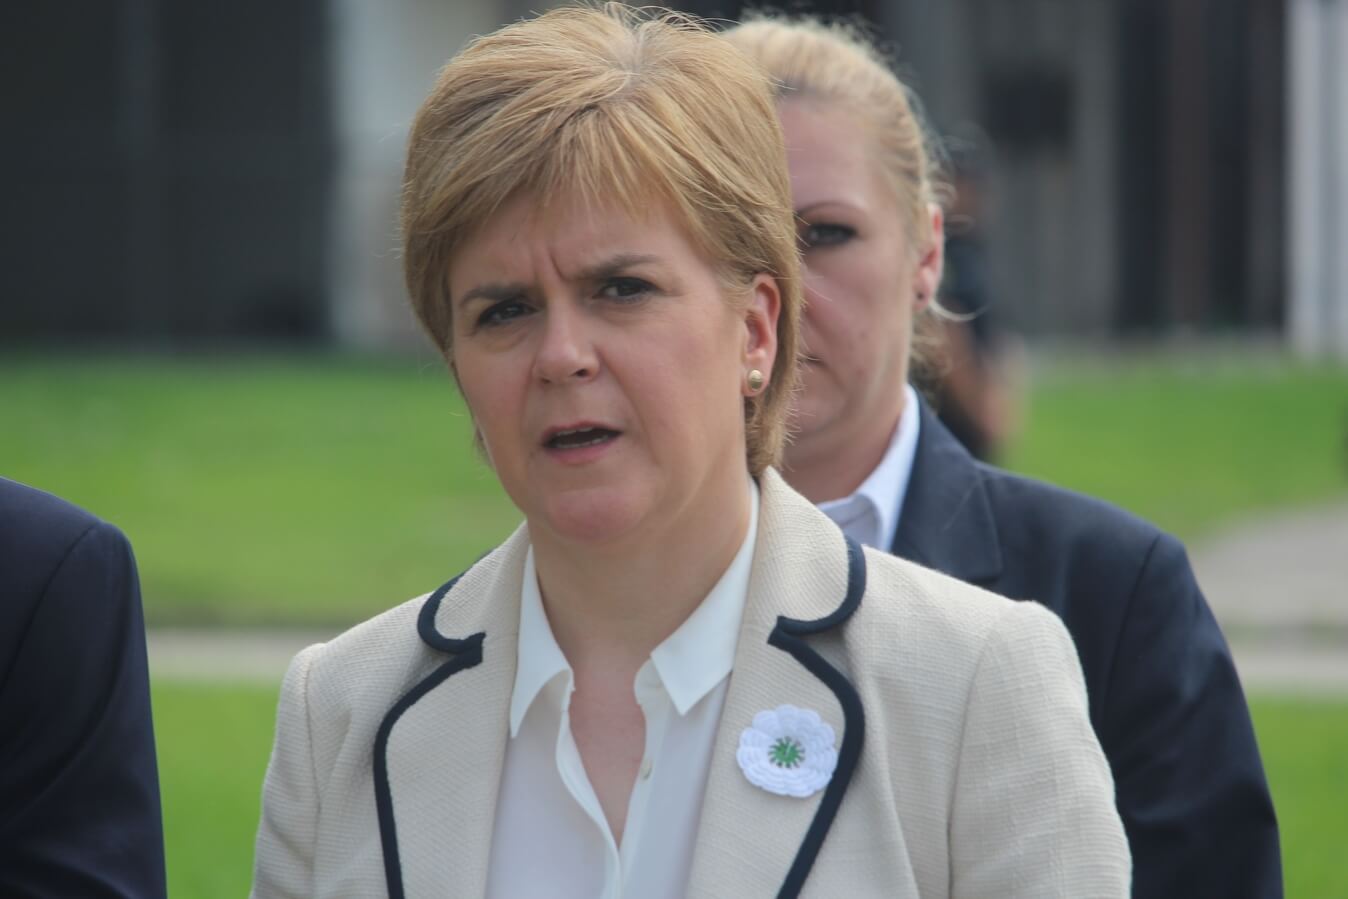 استقالة الوزيرة الأولى في اسكتلندا نيكولا ستروجون